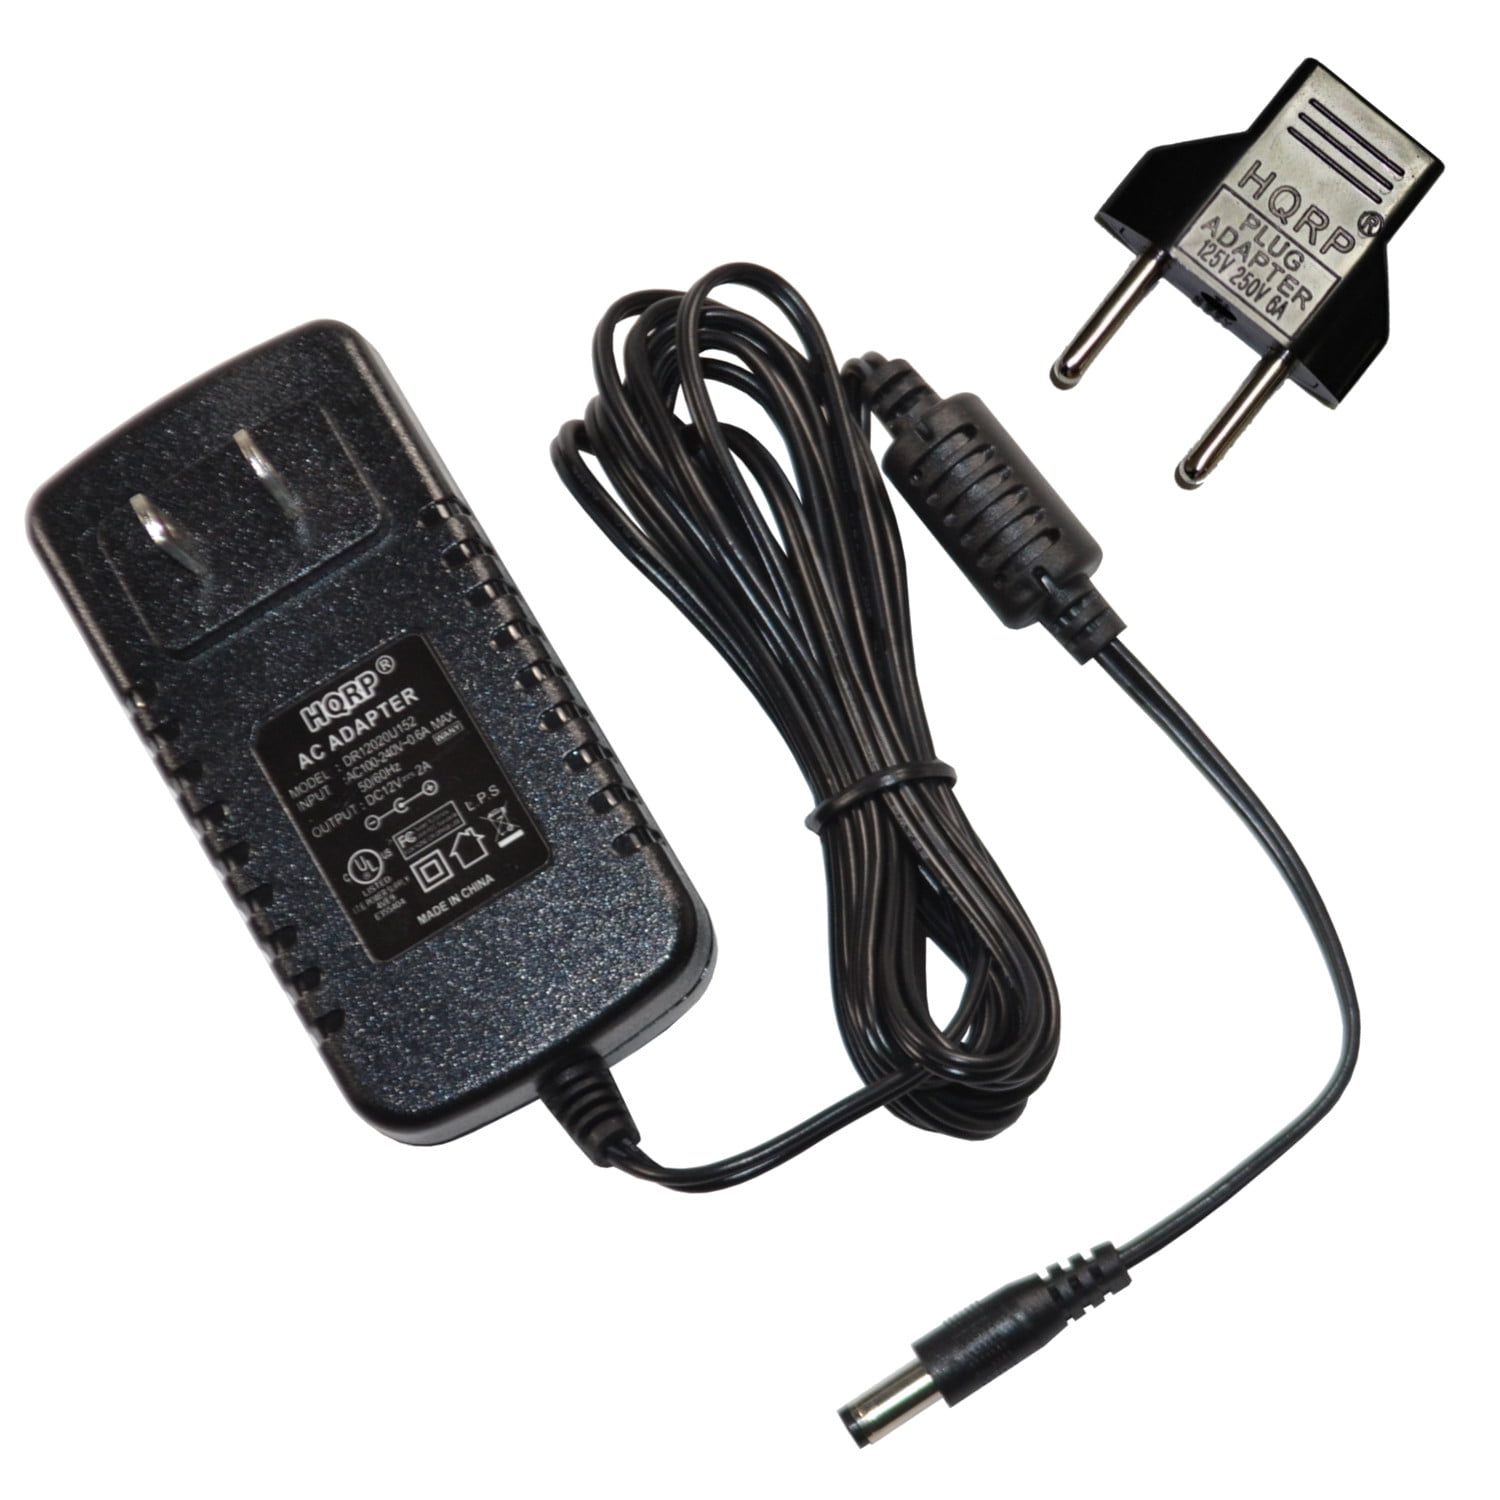 MyVolts 12V Power Supply Adaptor Compatible with Yamaha PSR-GX76 Keyboard US Plug 